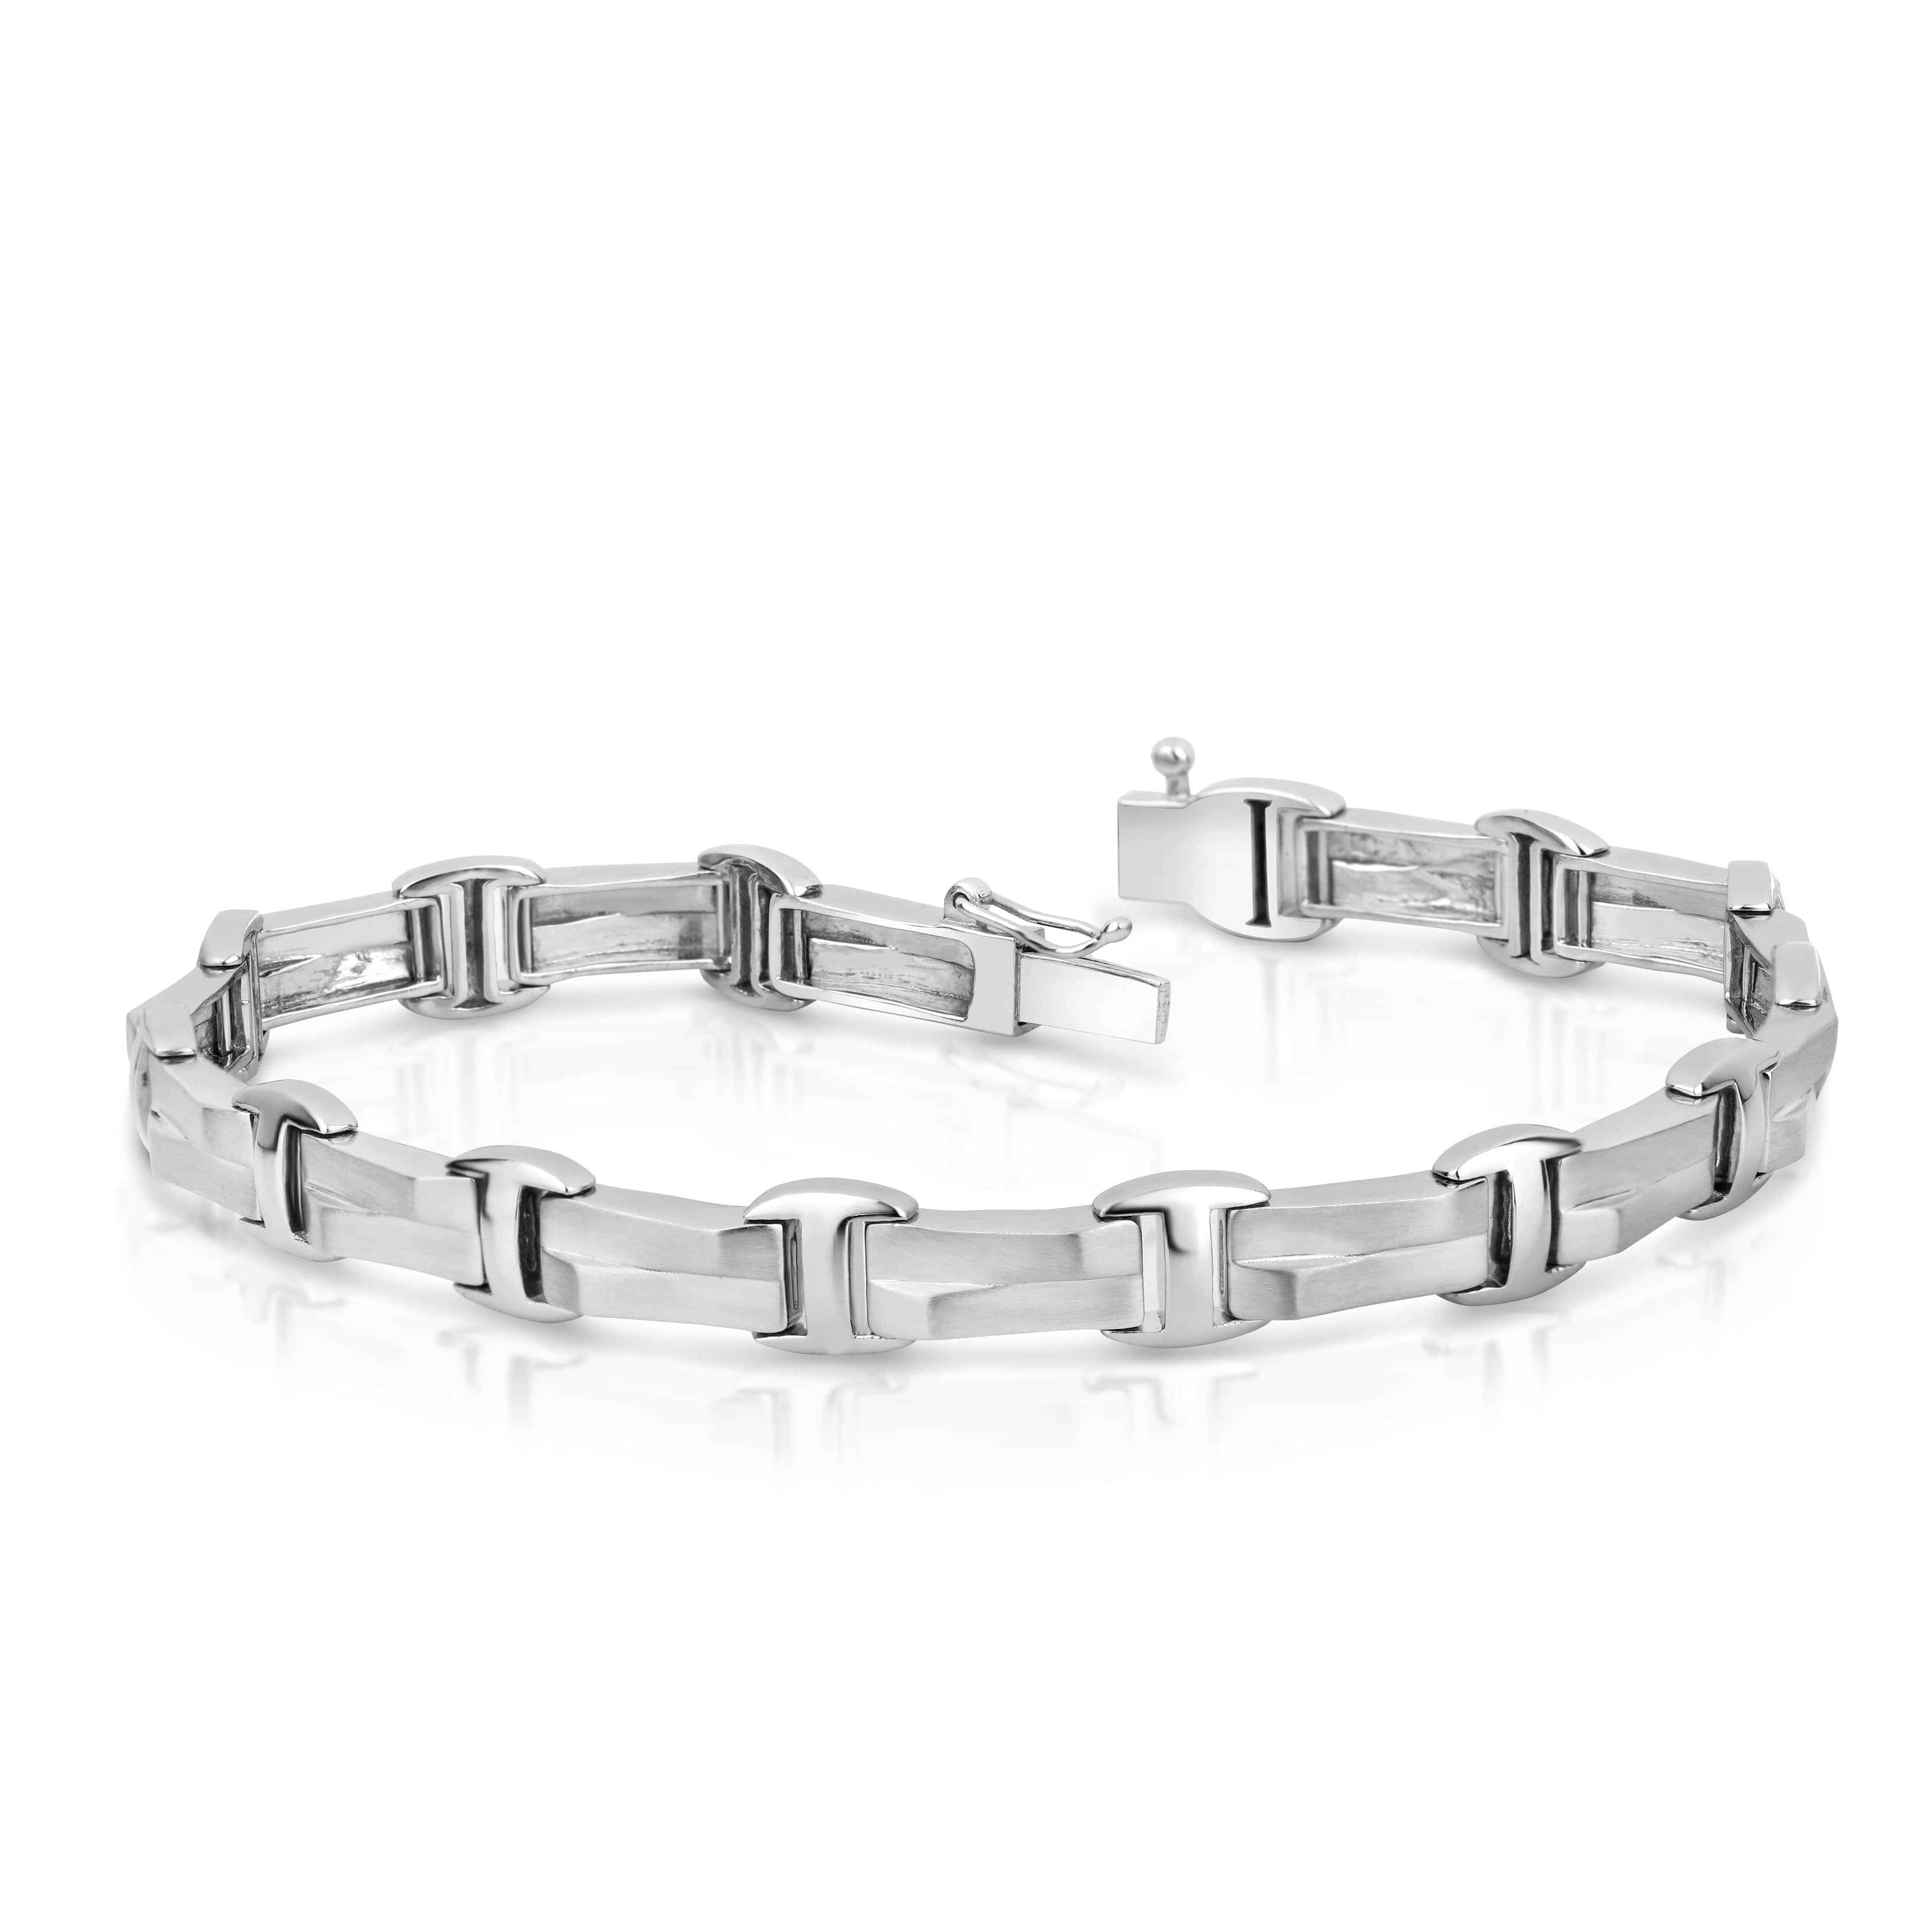 Designer Platinum & Rose Gold Bracelet for Men JL PTB 1080 - Etsy | Platinum  rose gold, Bracelets for men, Platinum bracelet